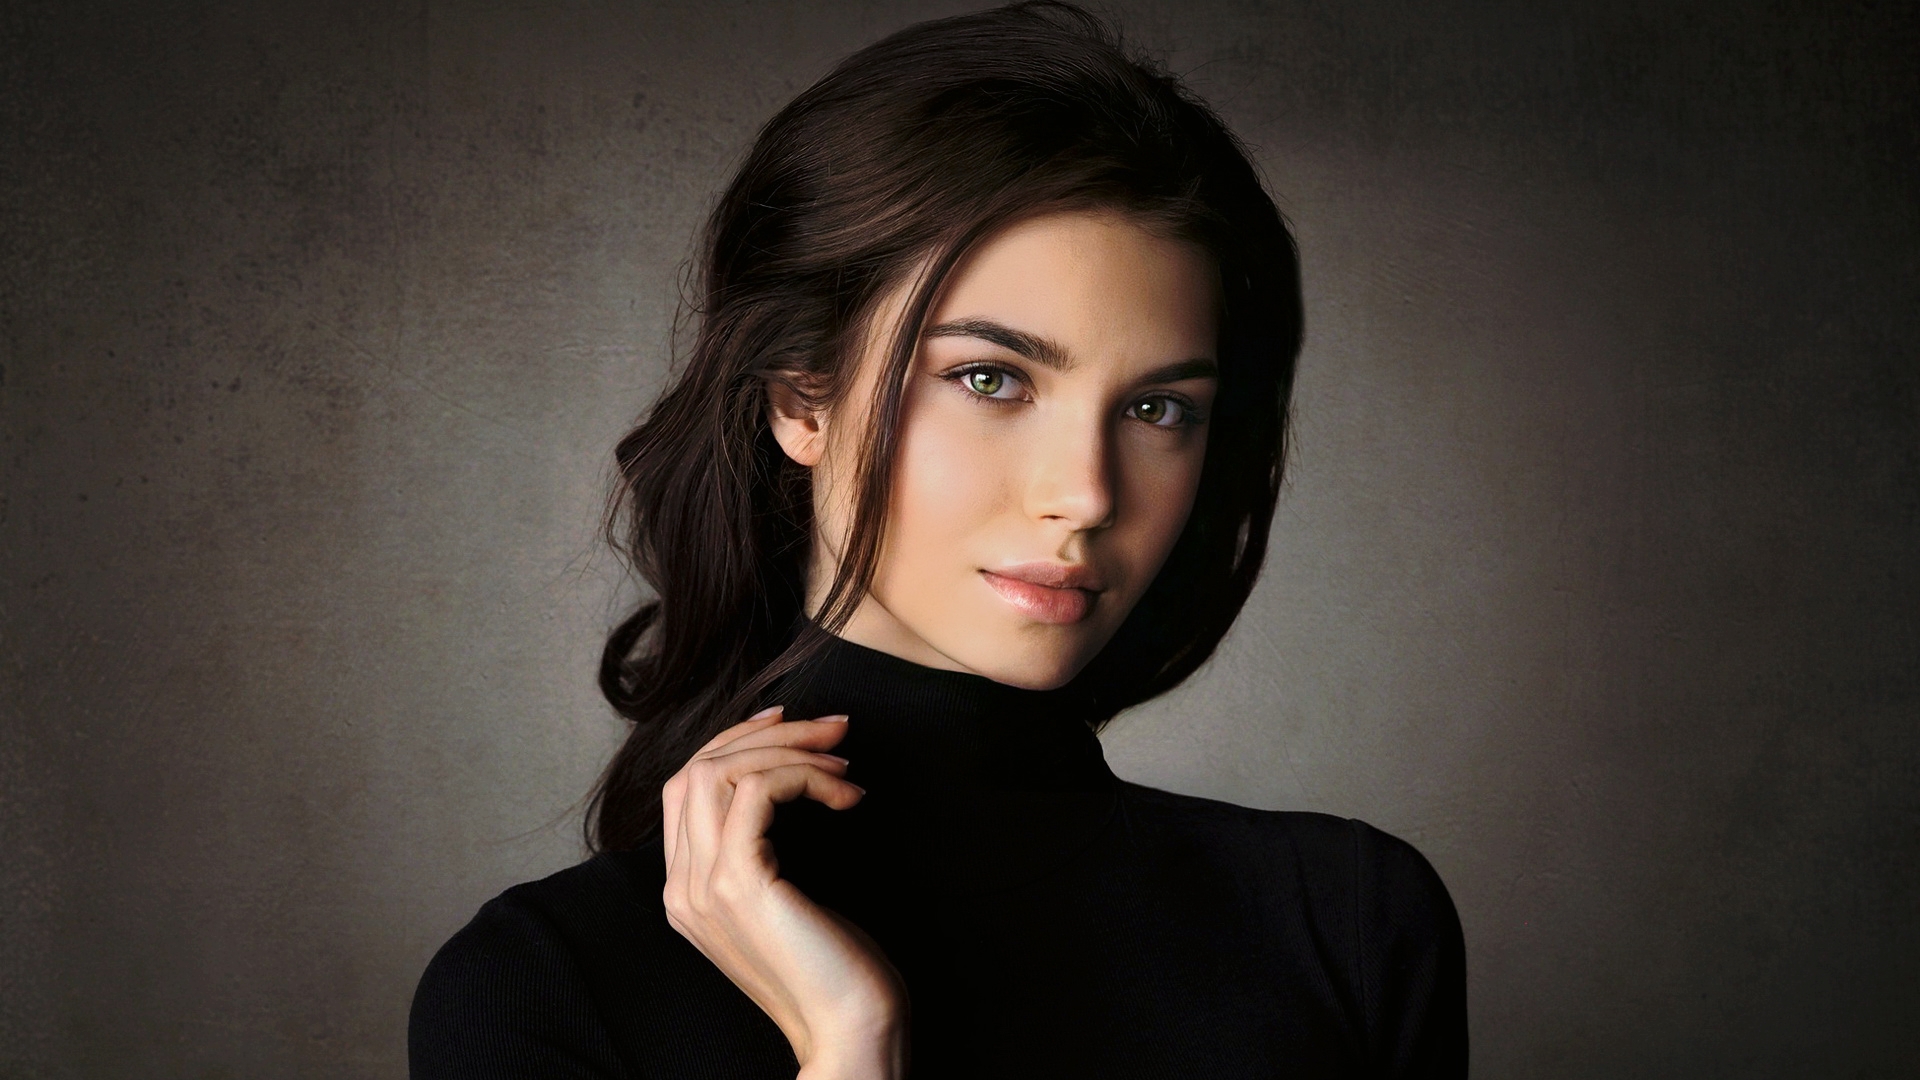 Бесплатное фото Портрет девушки в черном свитере на сером фоне